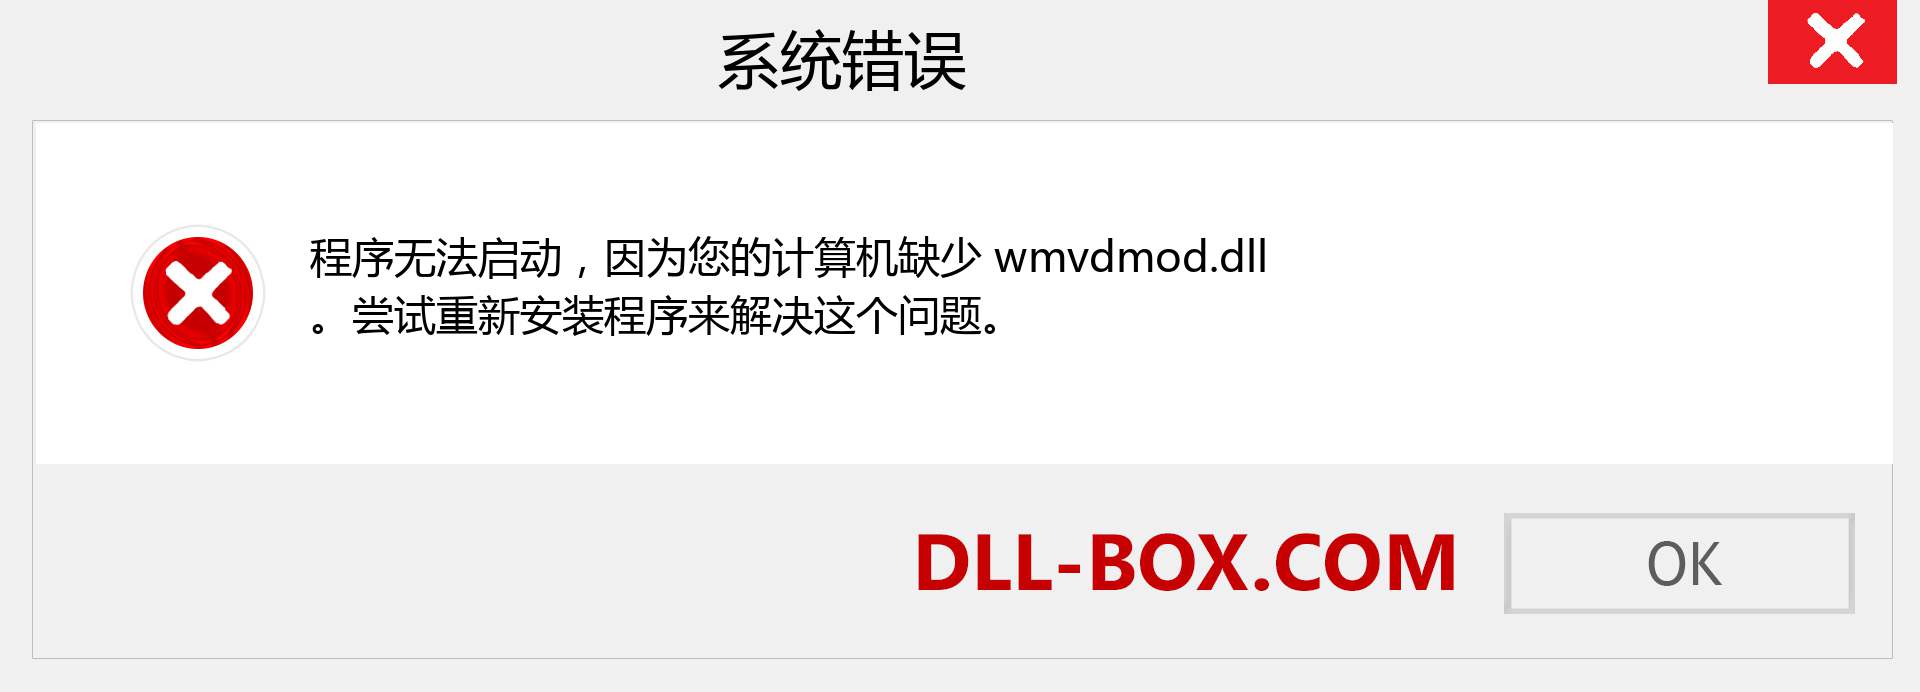 wmvdmod.dll 文件丢失？。 适用于 Windows 7、8、10 的下载 - 修复 Windows、照片、图像上的 wmvdmod dll 丢失错误